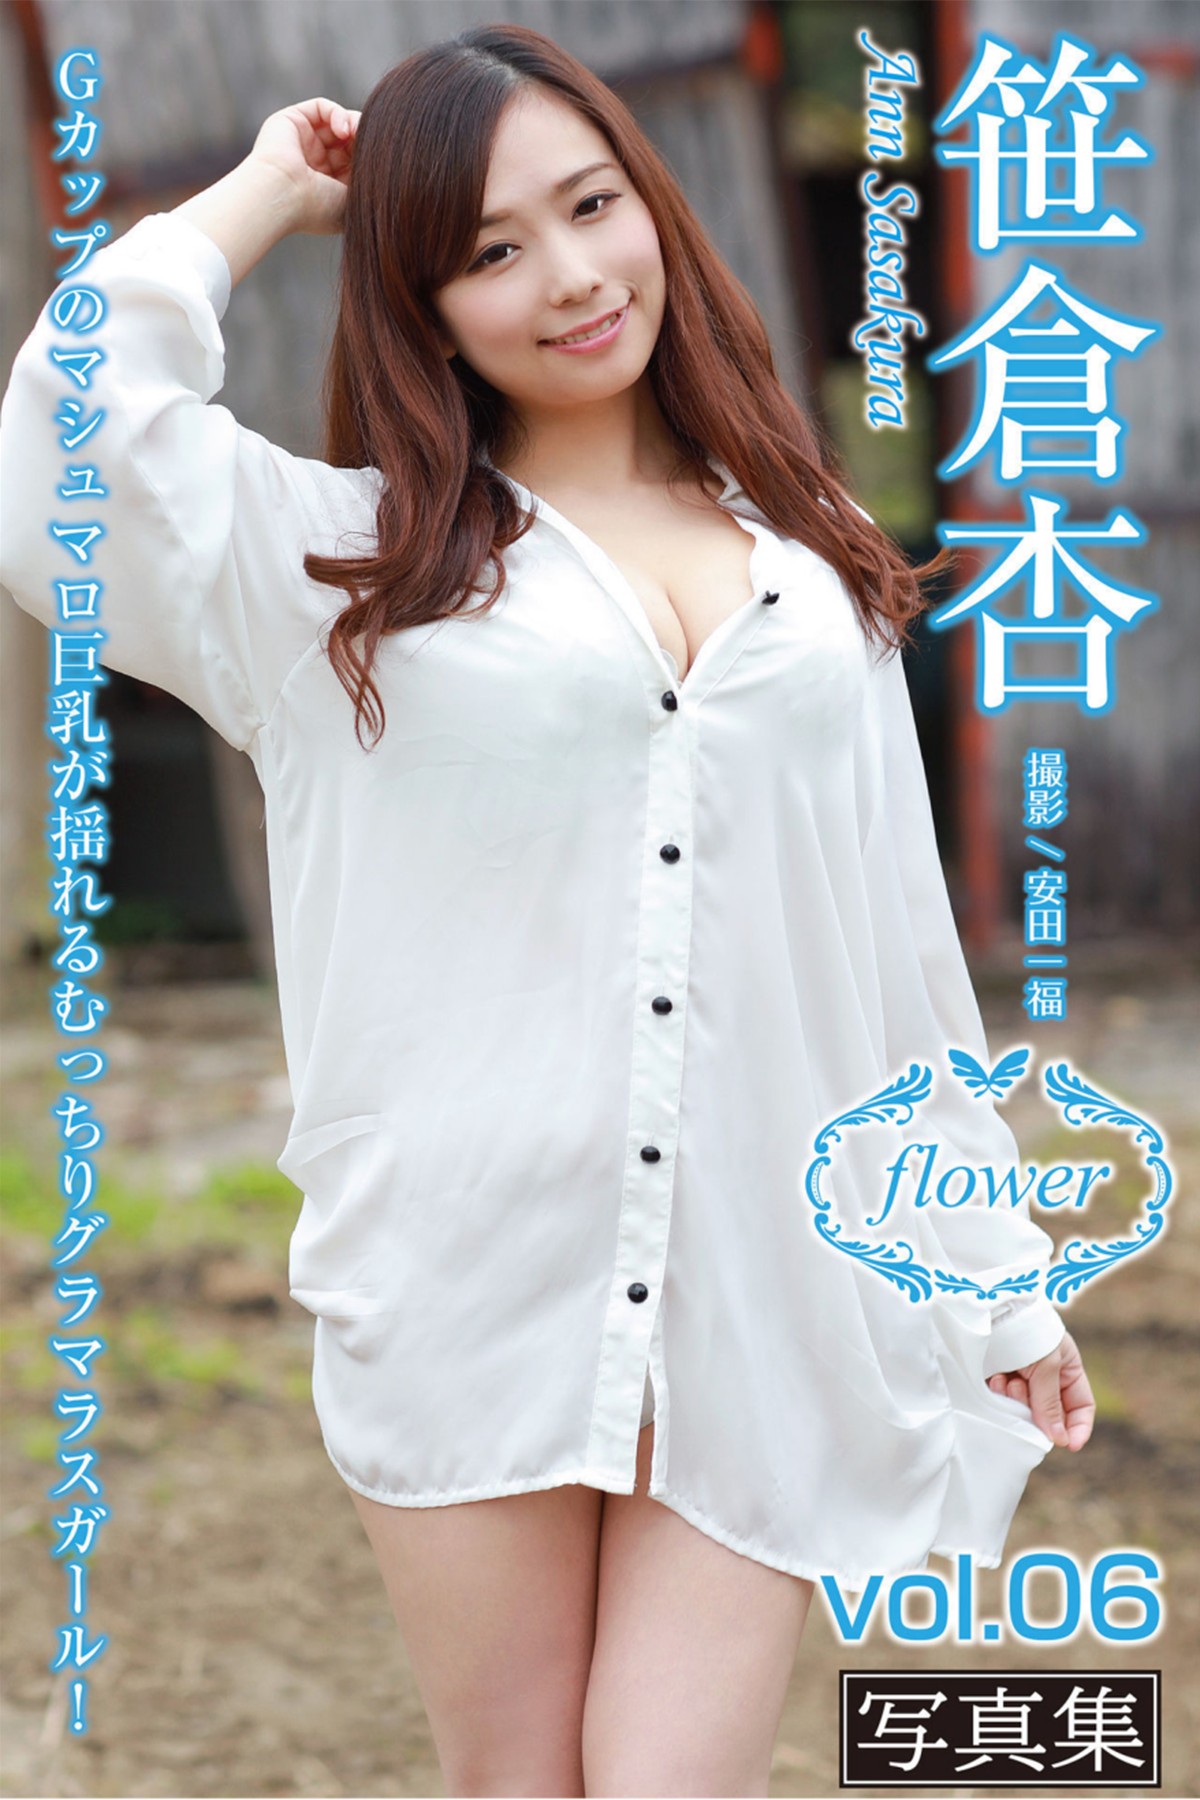 FLOWER デジタル写真集 Ann Sasakura 笹倉杏 Vol.06